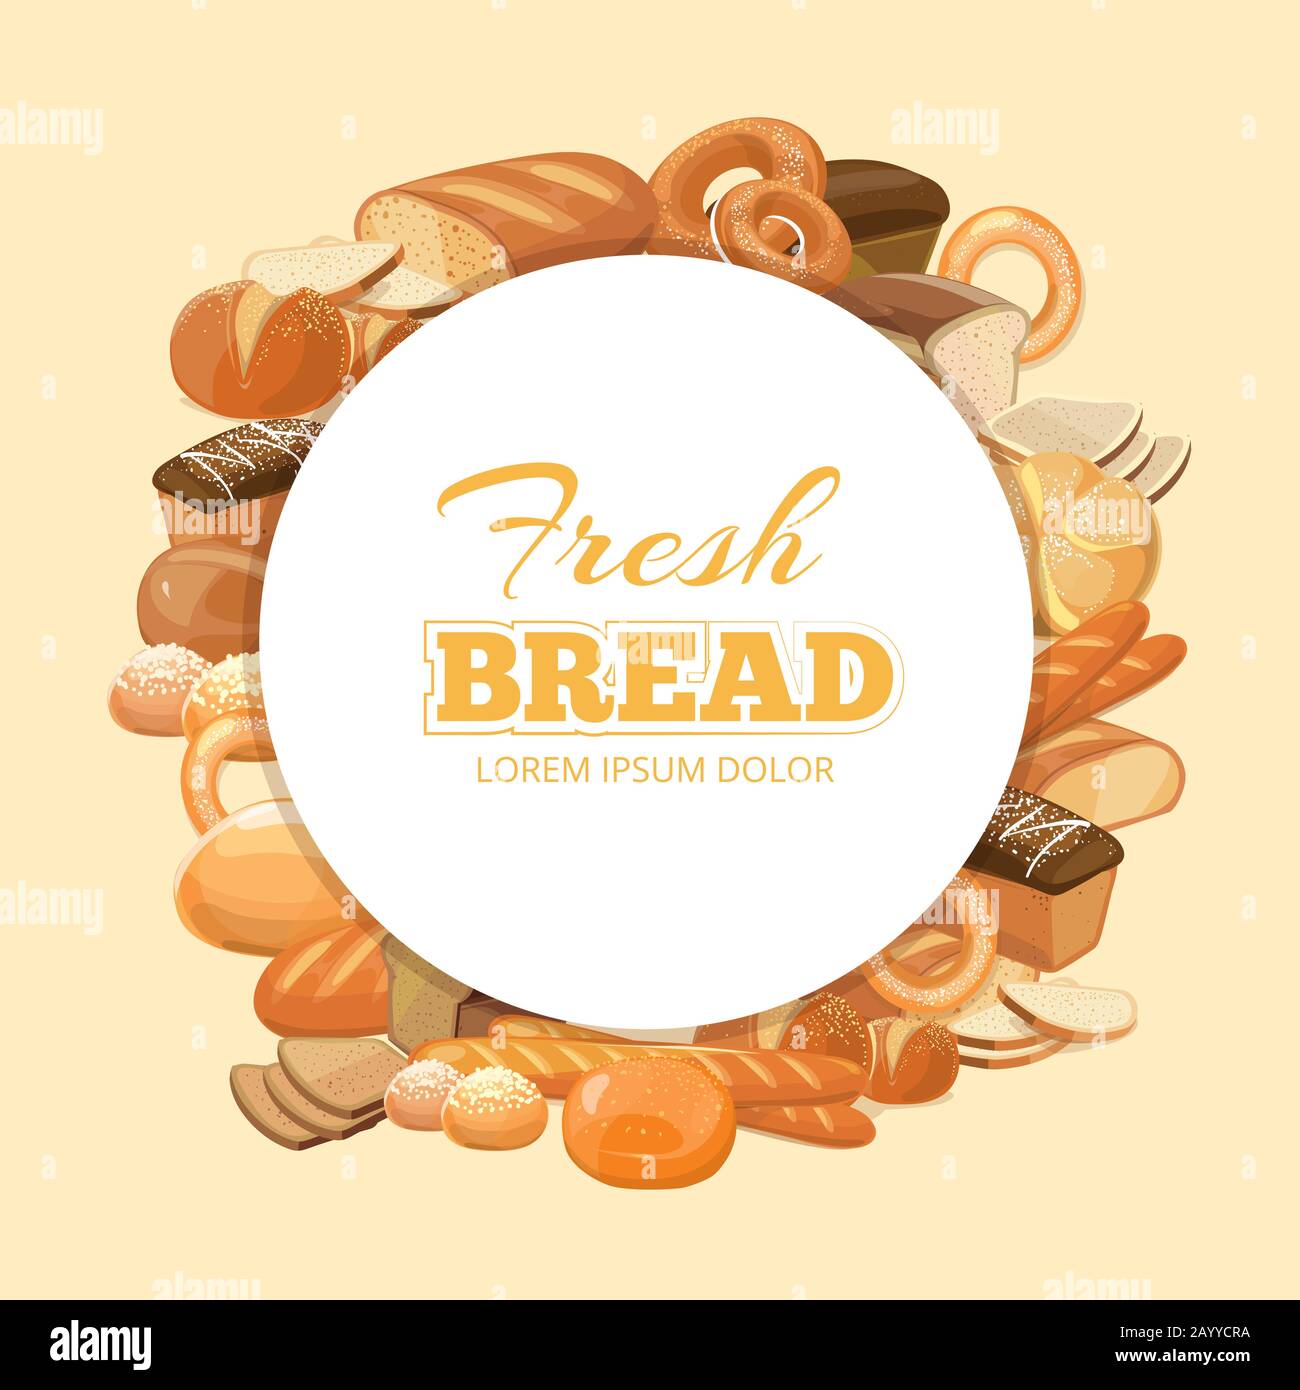 Verschiedene Brot-Vektor-Hintergründe. Müsli Brot natürlich und Emblem mit Produkt Brot und Backwaren Illustration Stock Vektor